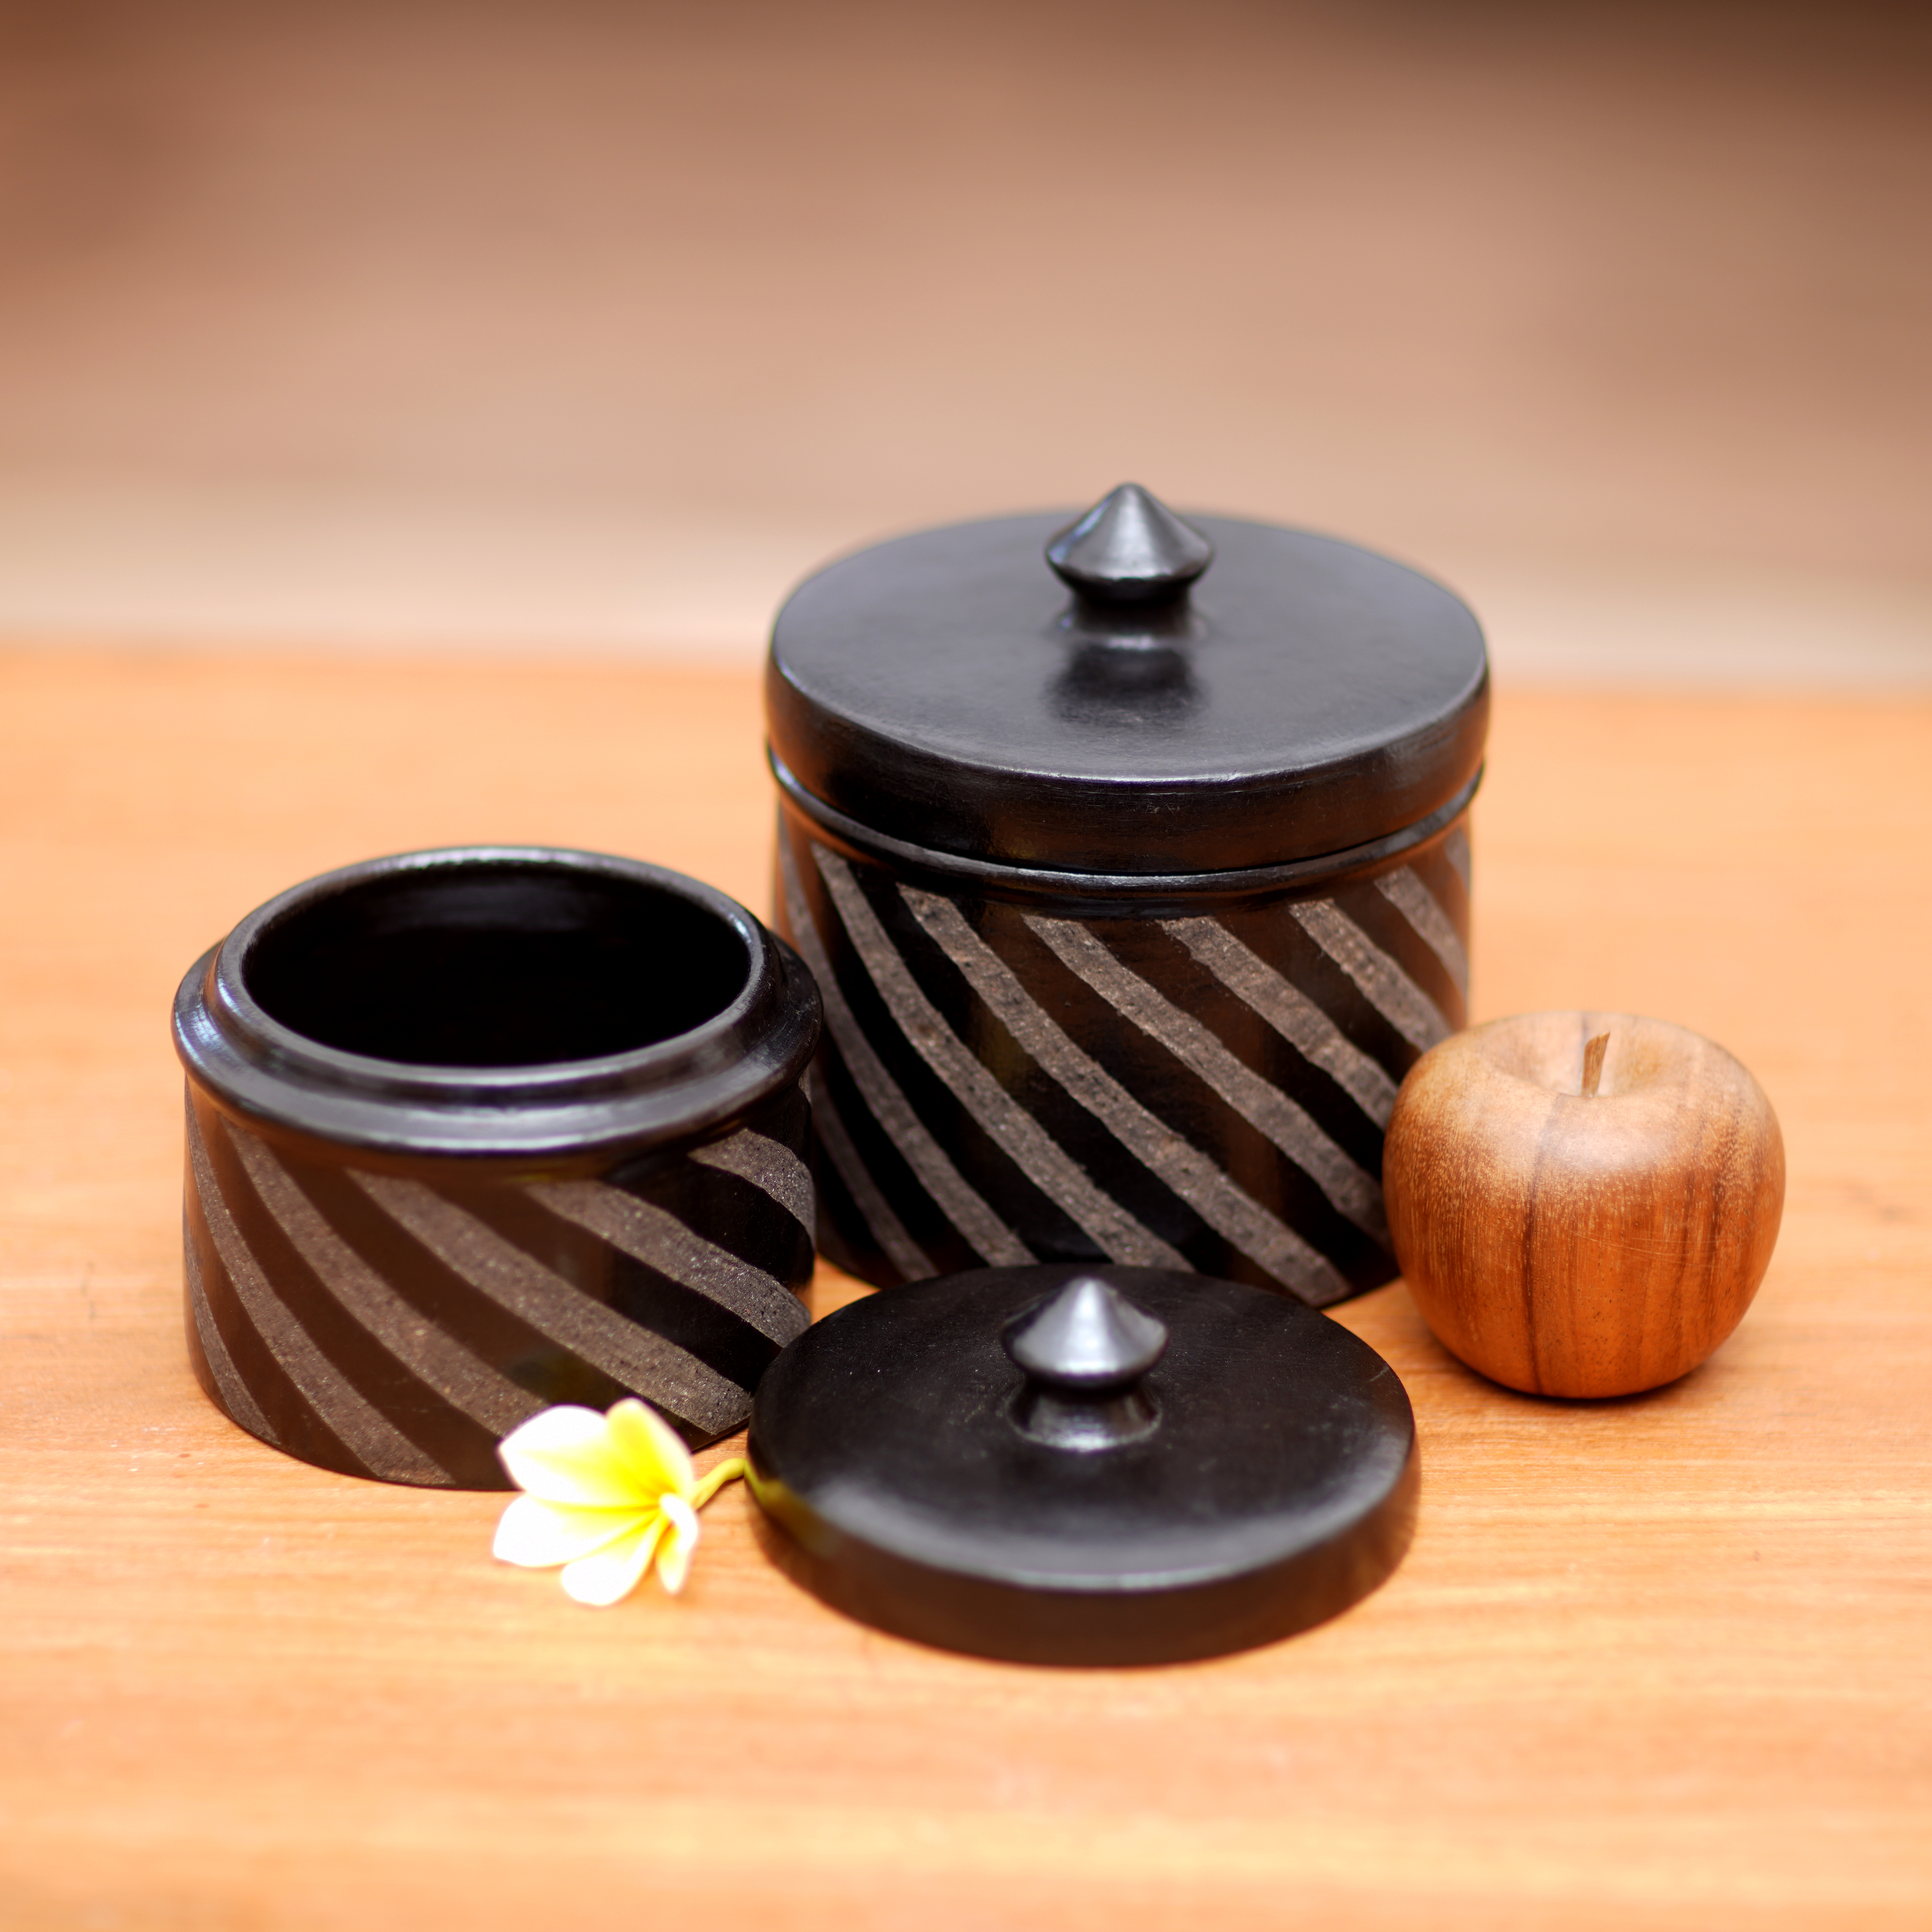 Jarras de cerámica, (par) - Tarros de Cerámica Negro Elaborados a Mano (Pareja)